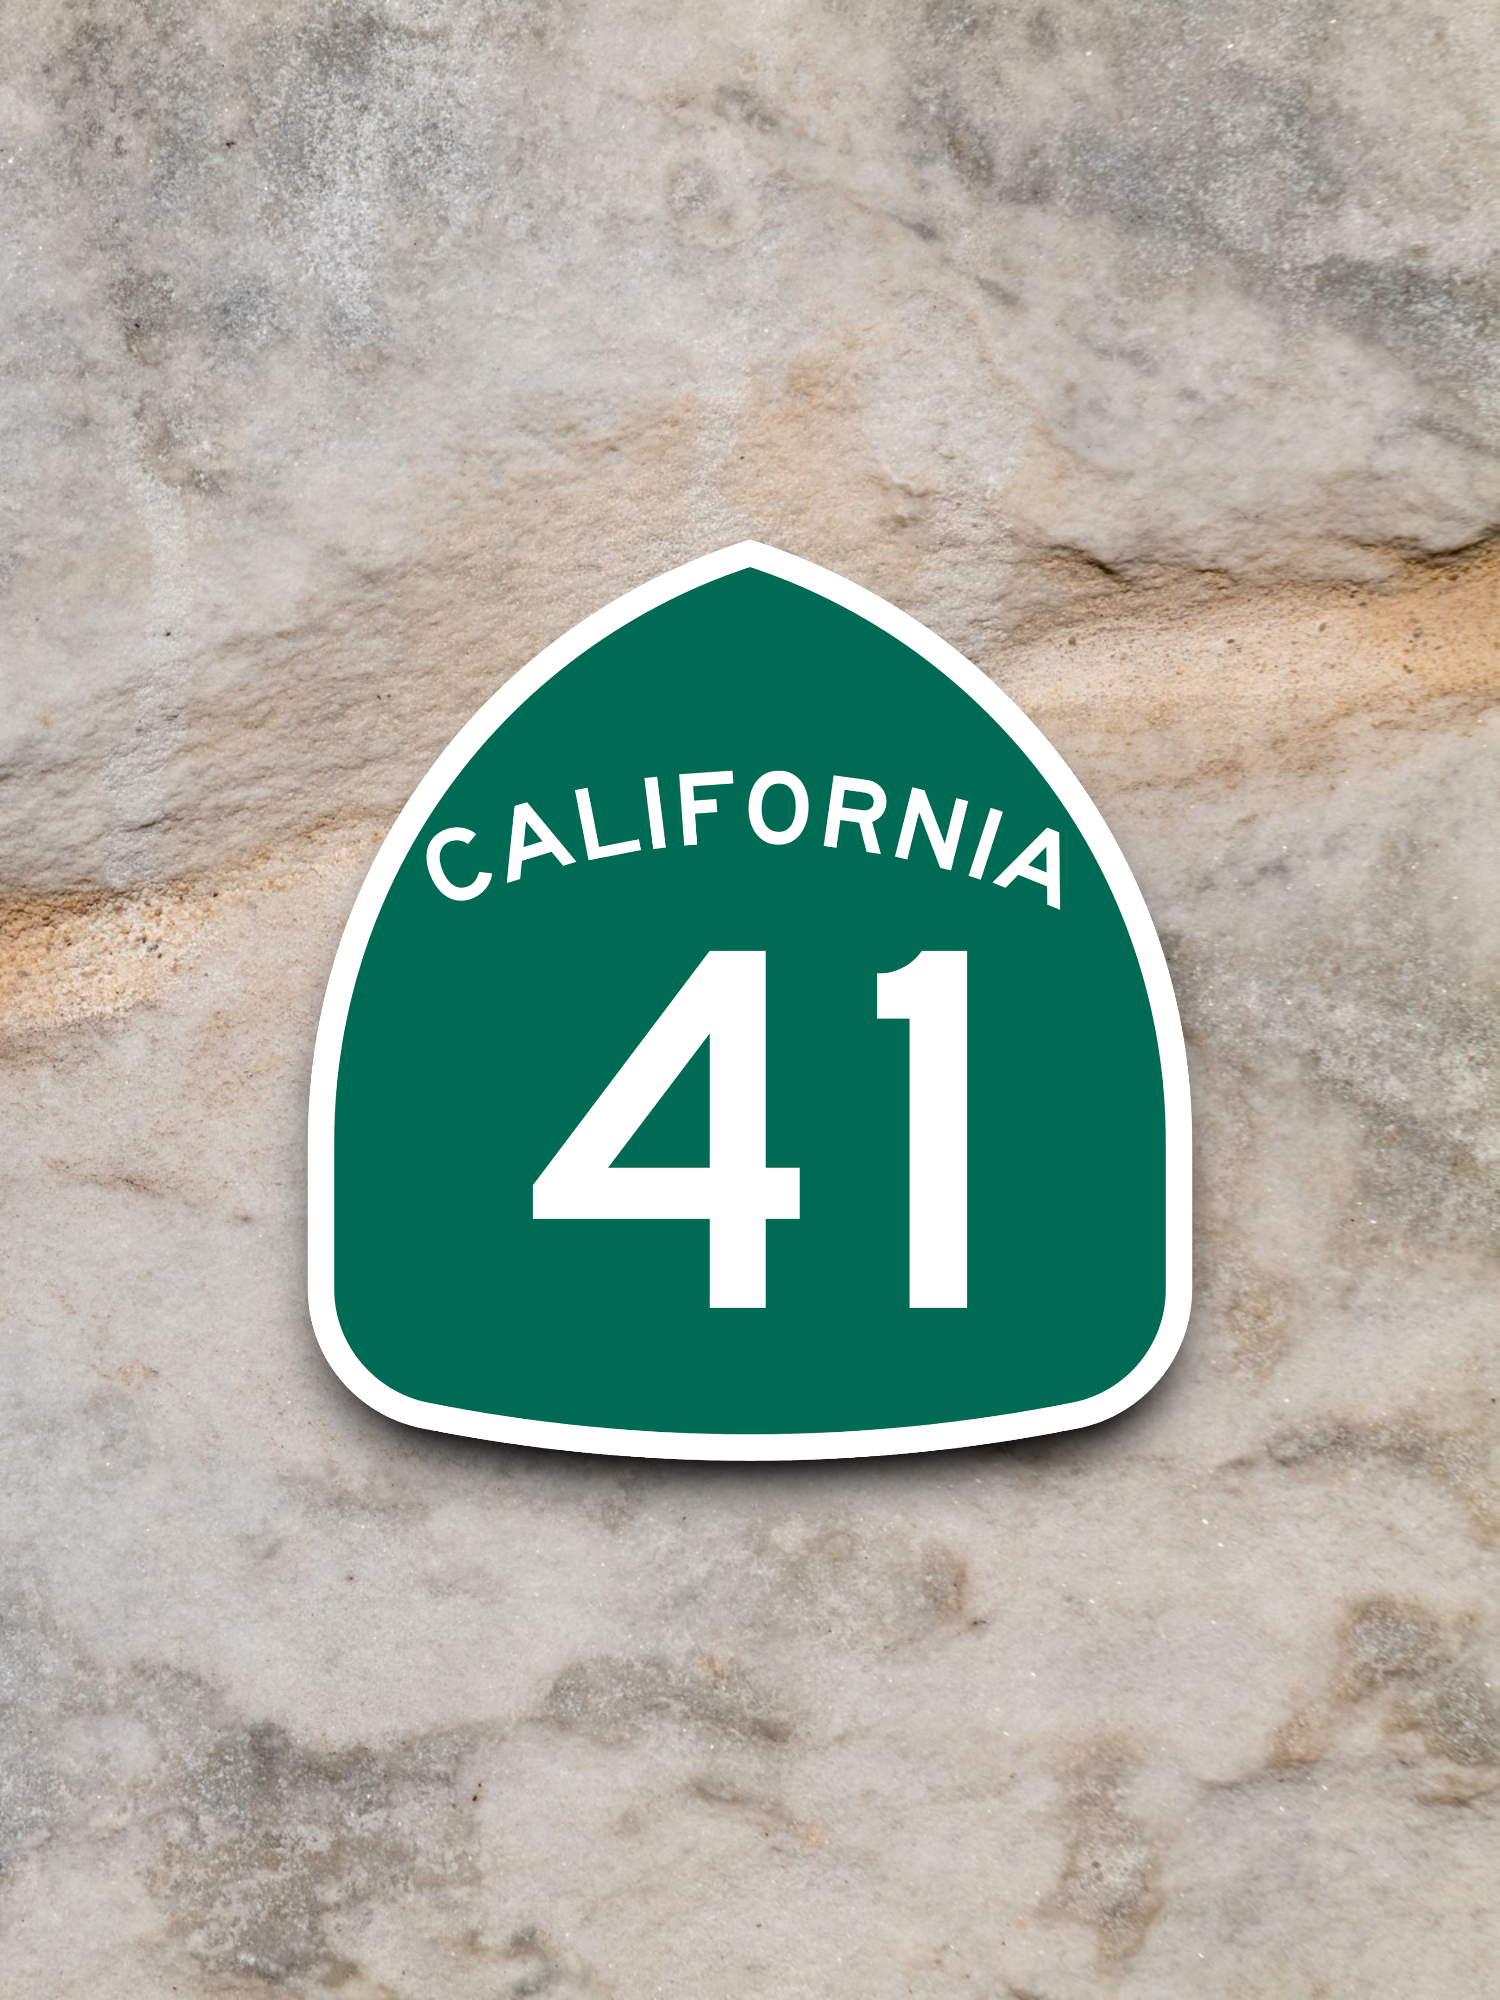 California State Route 41 Sticker